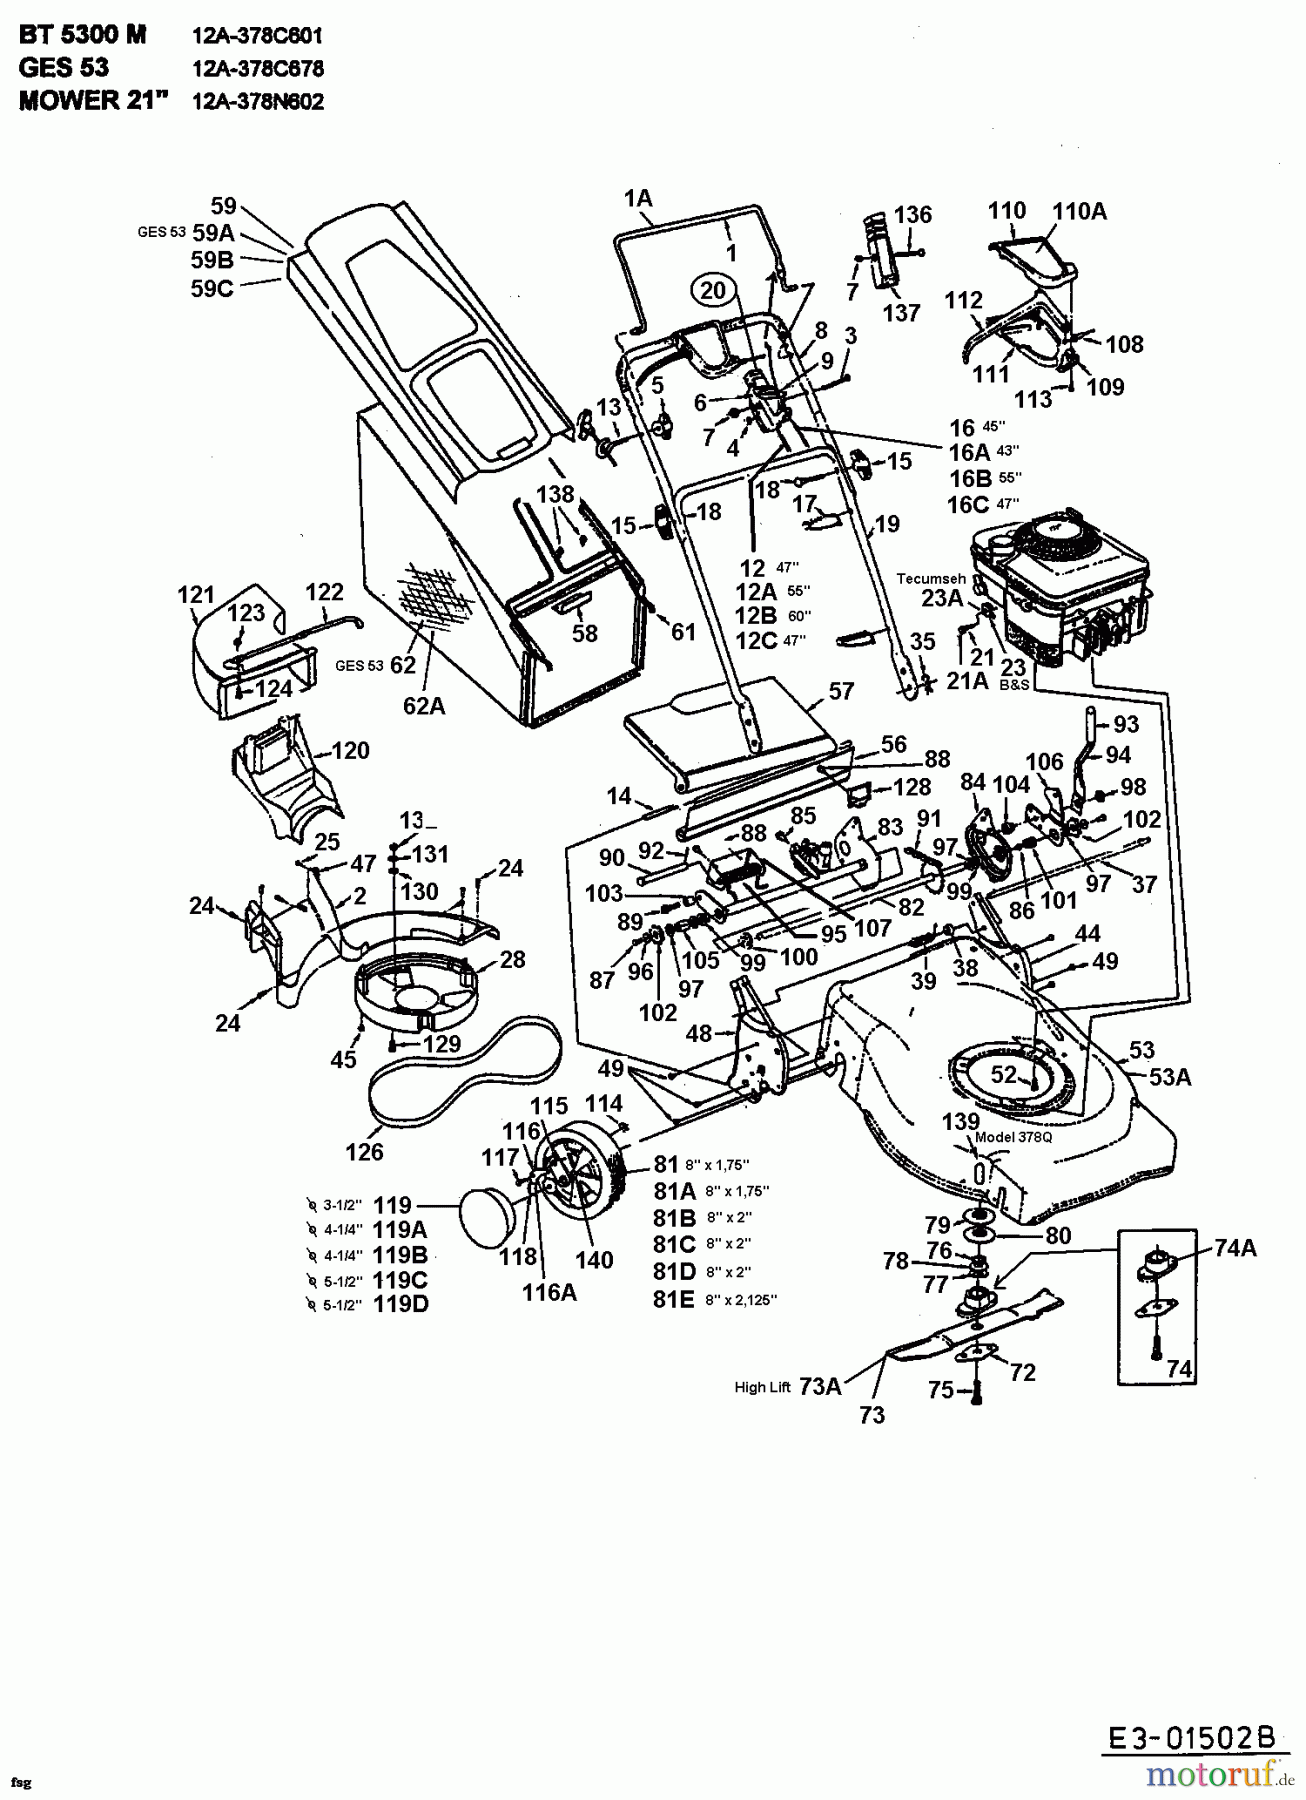  MTD Motormäher mit Antrieb GES 53 12A-378C678  (2001) Grundgerät